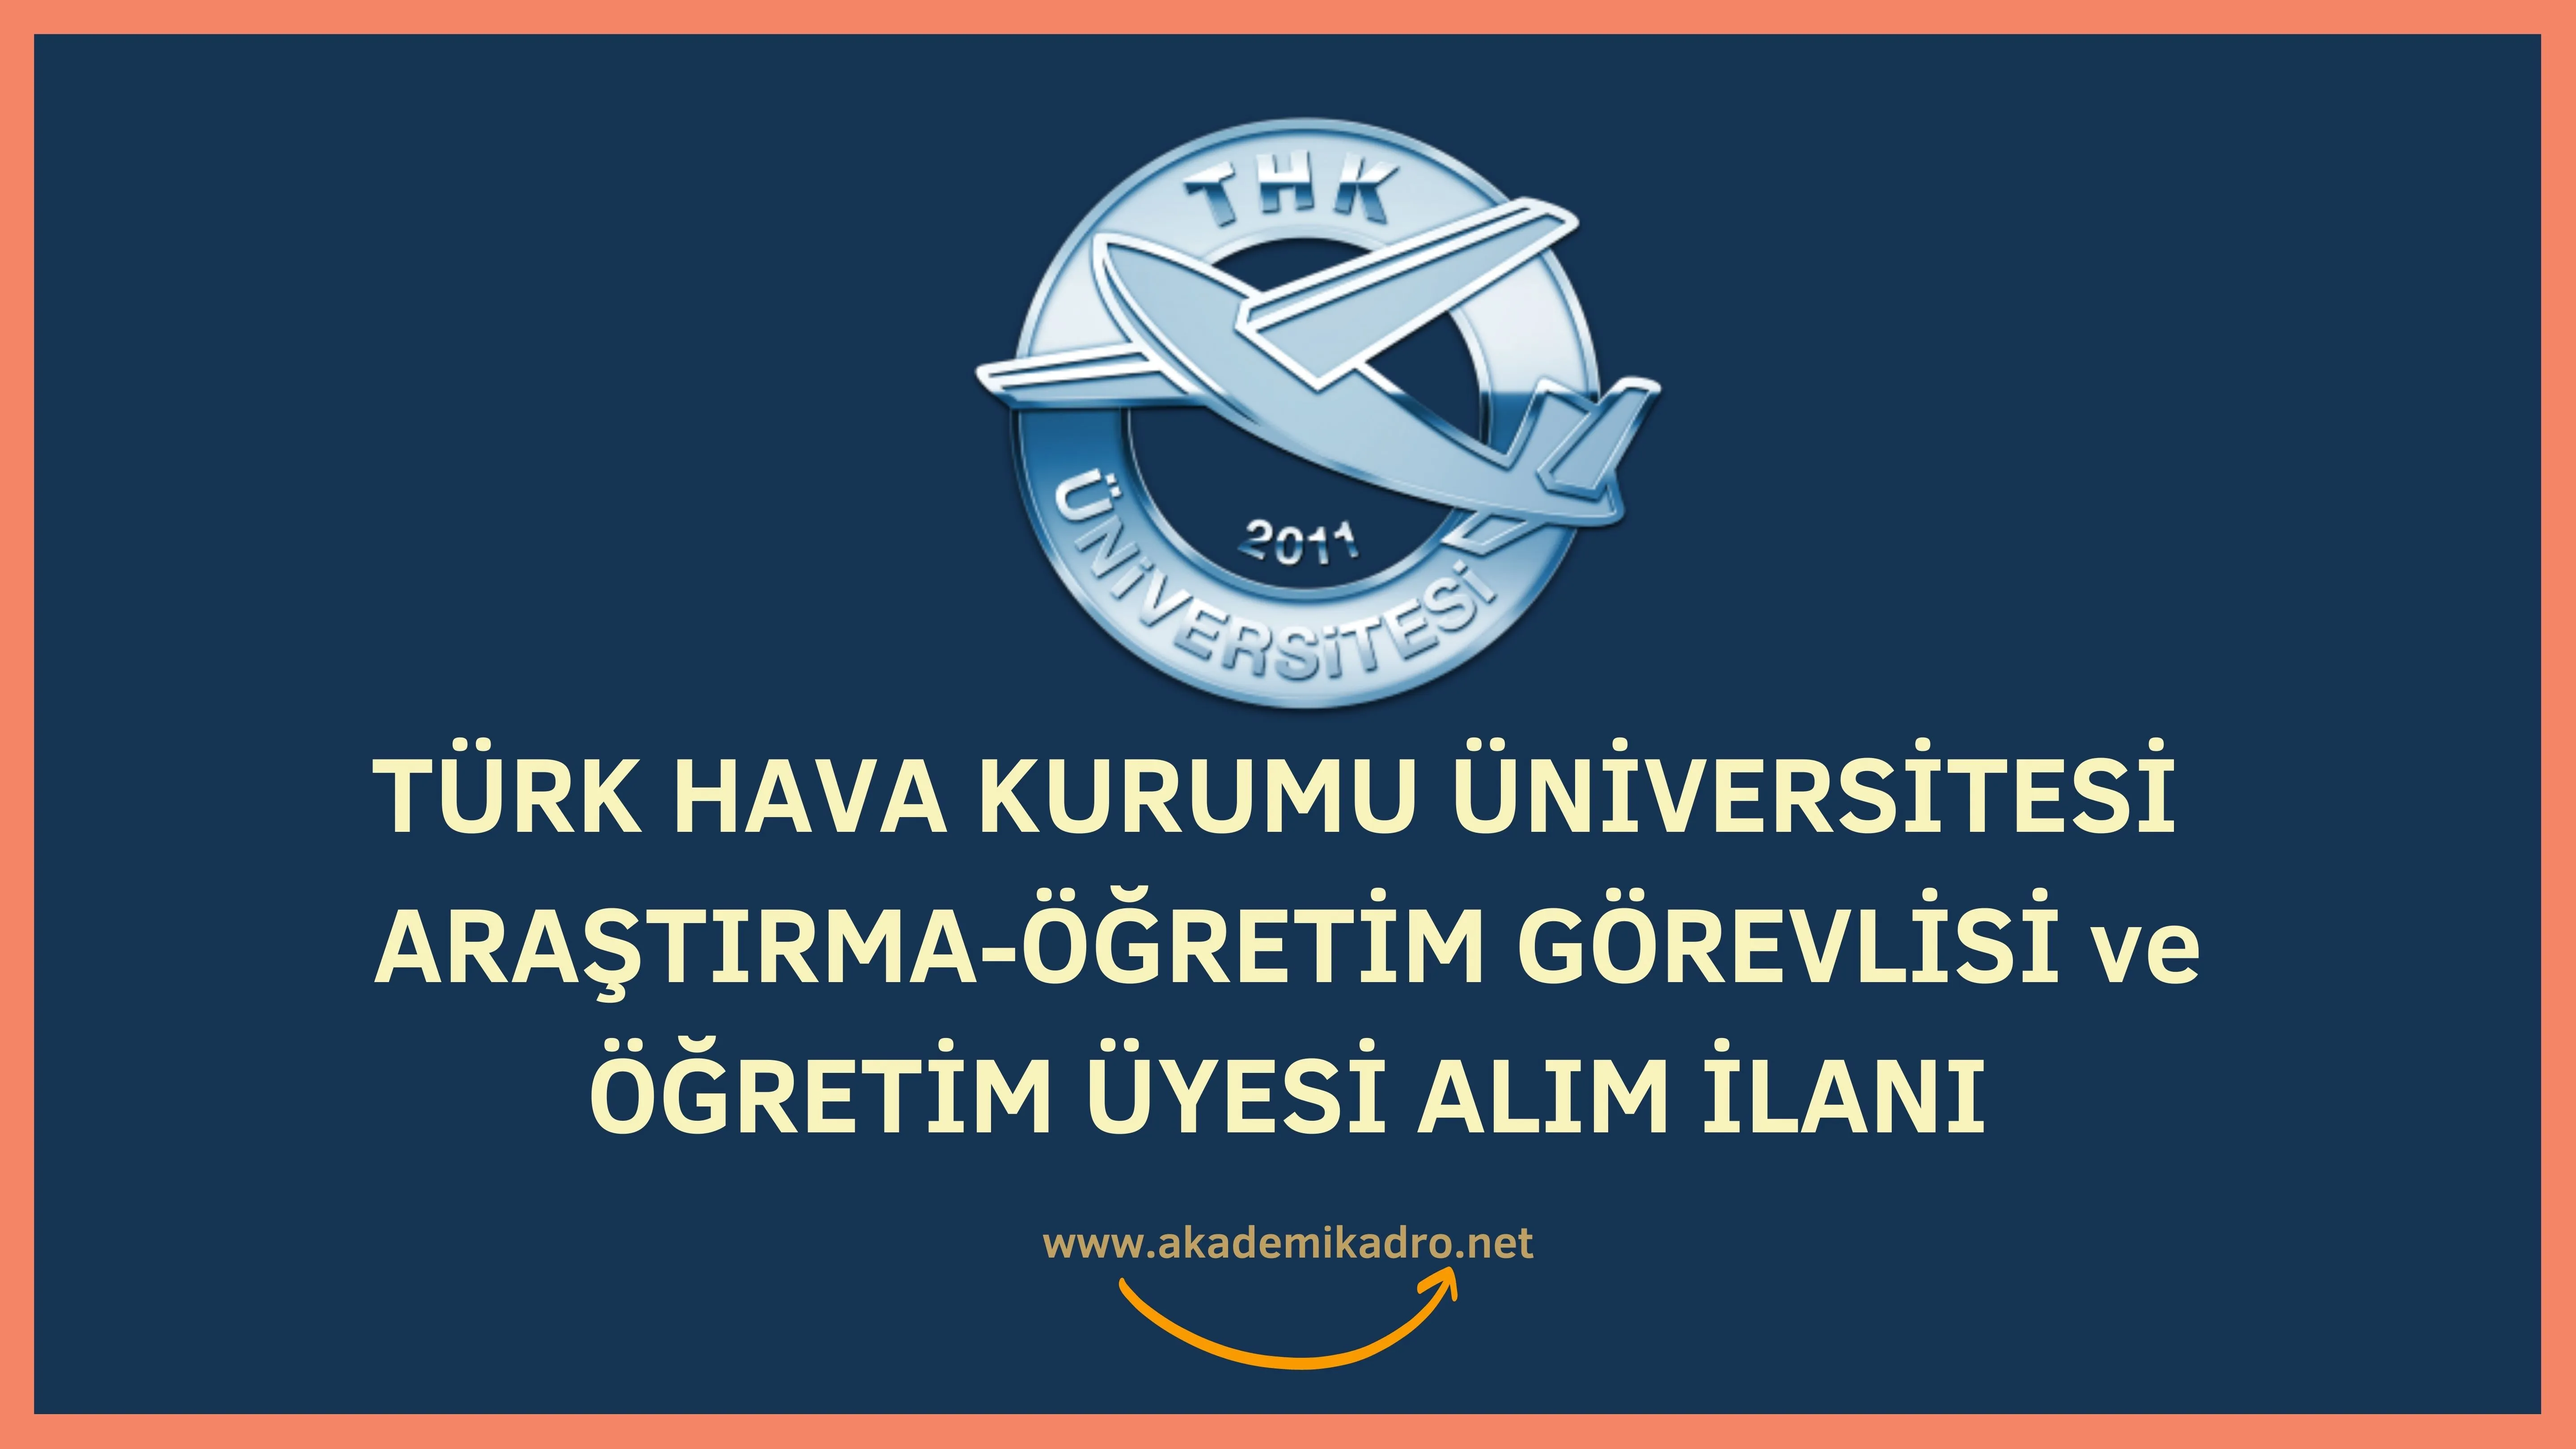 Türk Hava Kurumu Üniversitesi 12 Öğretim görevlisi, 2 Araştırma görevlisi ve  7 Öğretim üyesi alacak.